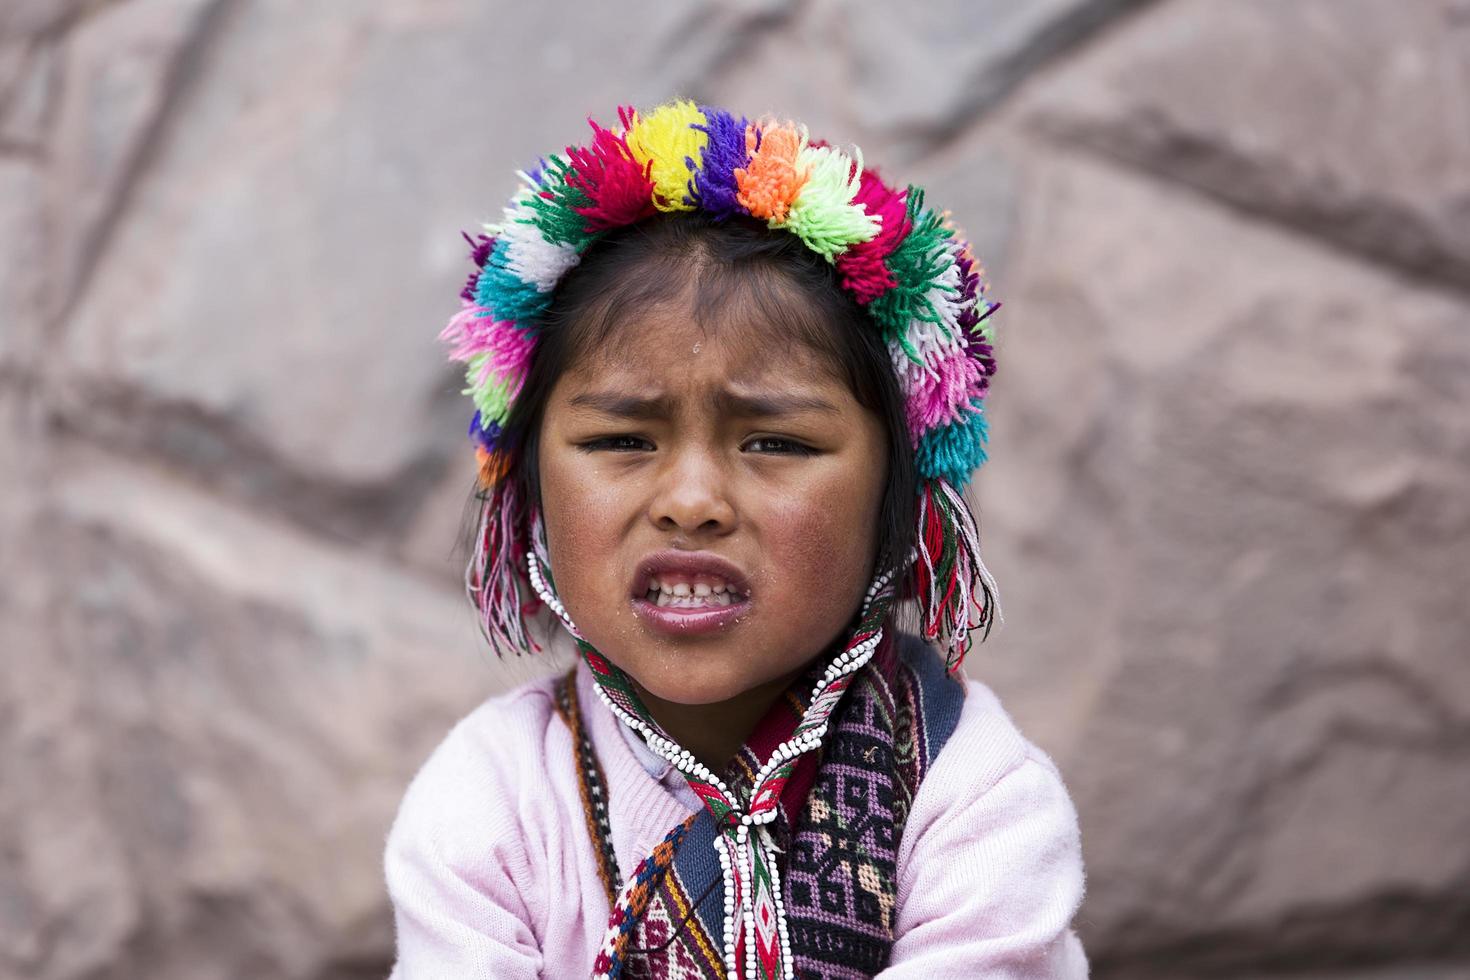 cusco, perú, 31 de diciembre de 2017 - niña no identificada en la calle de cusco, perú. casi el 29 por ciento de la población cusqueña tiene menos de 14 años. foto